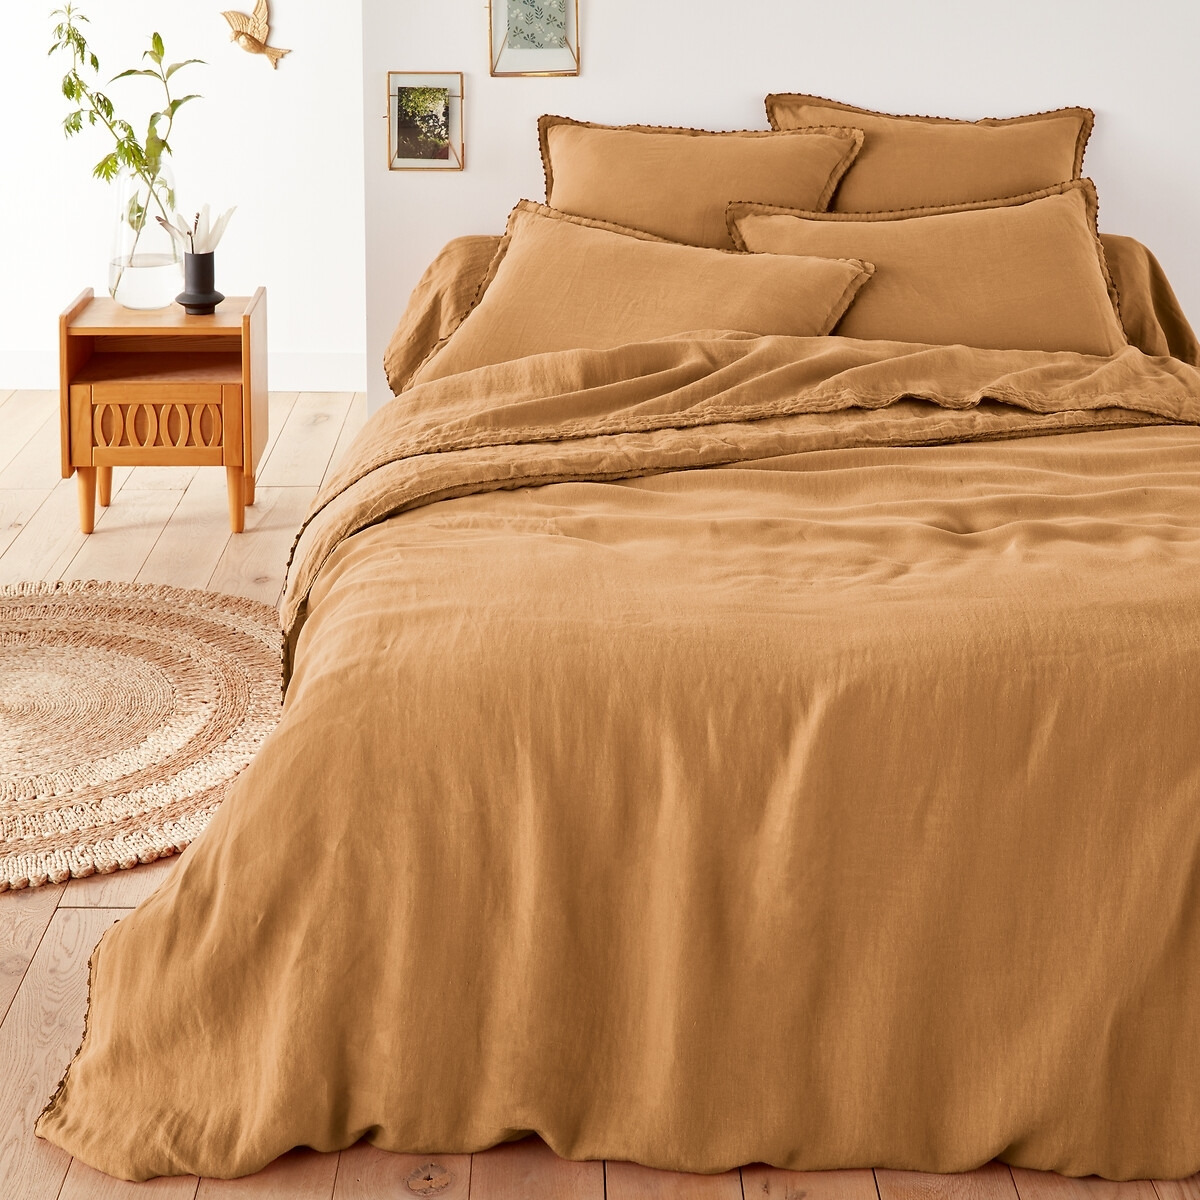 Leone 100% Washed Linen Duvet Cover - image 1